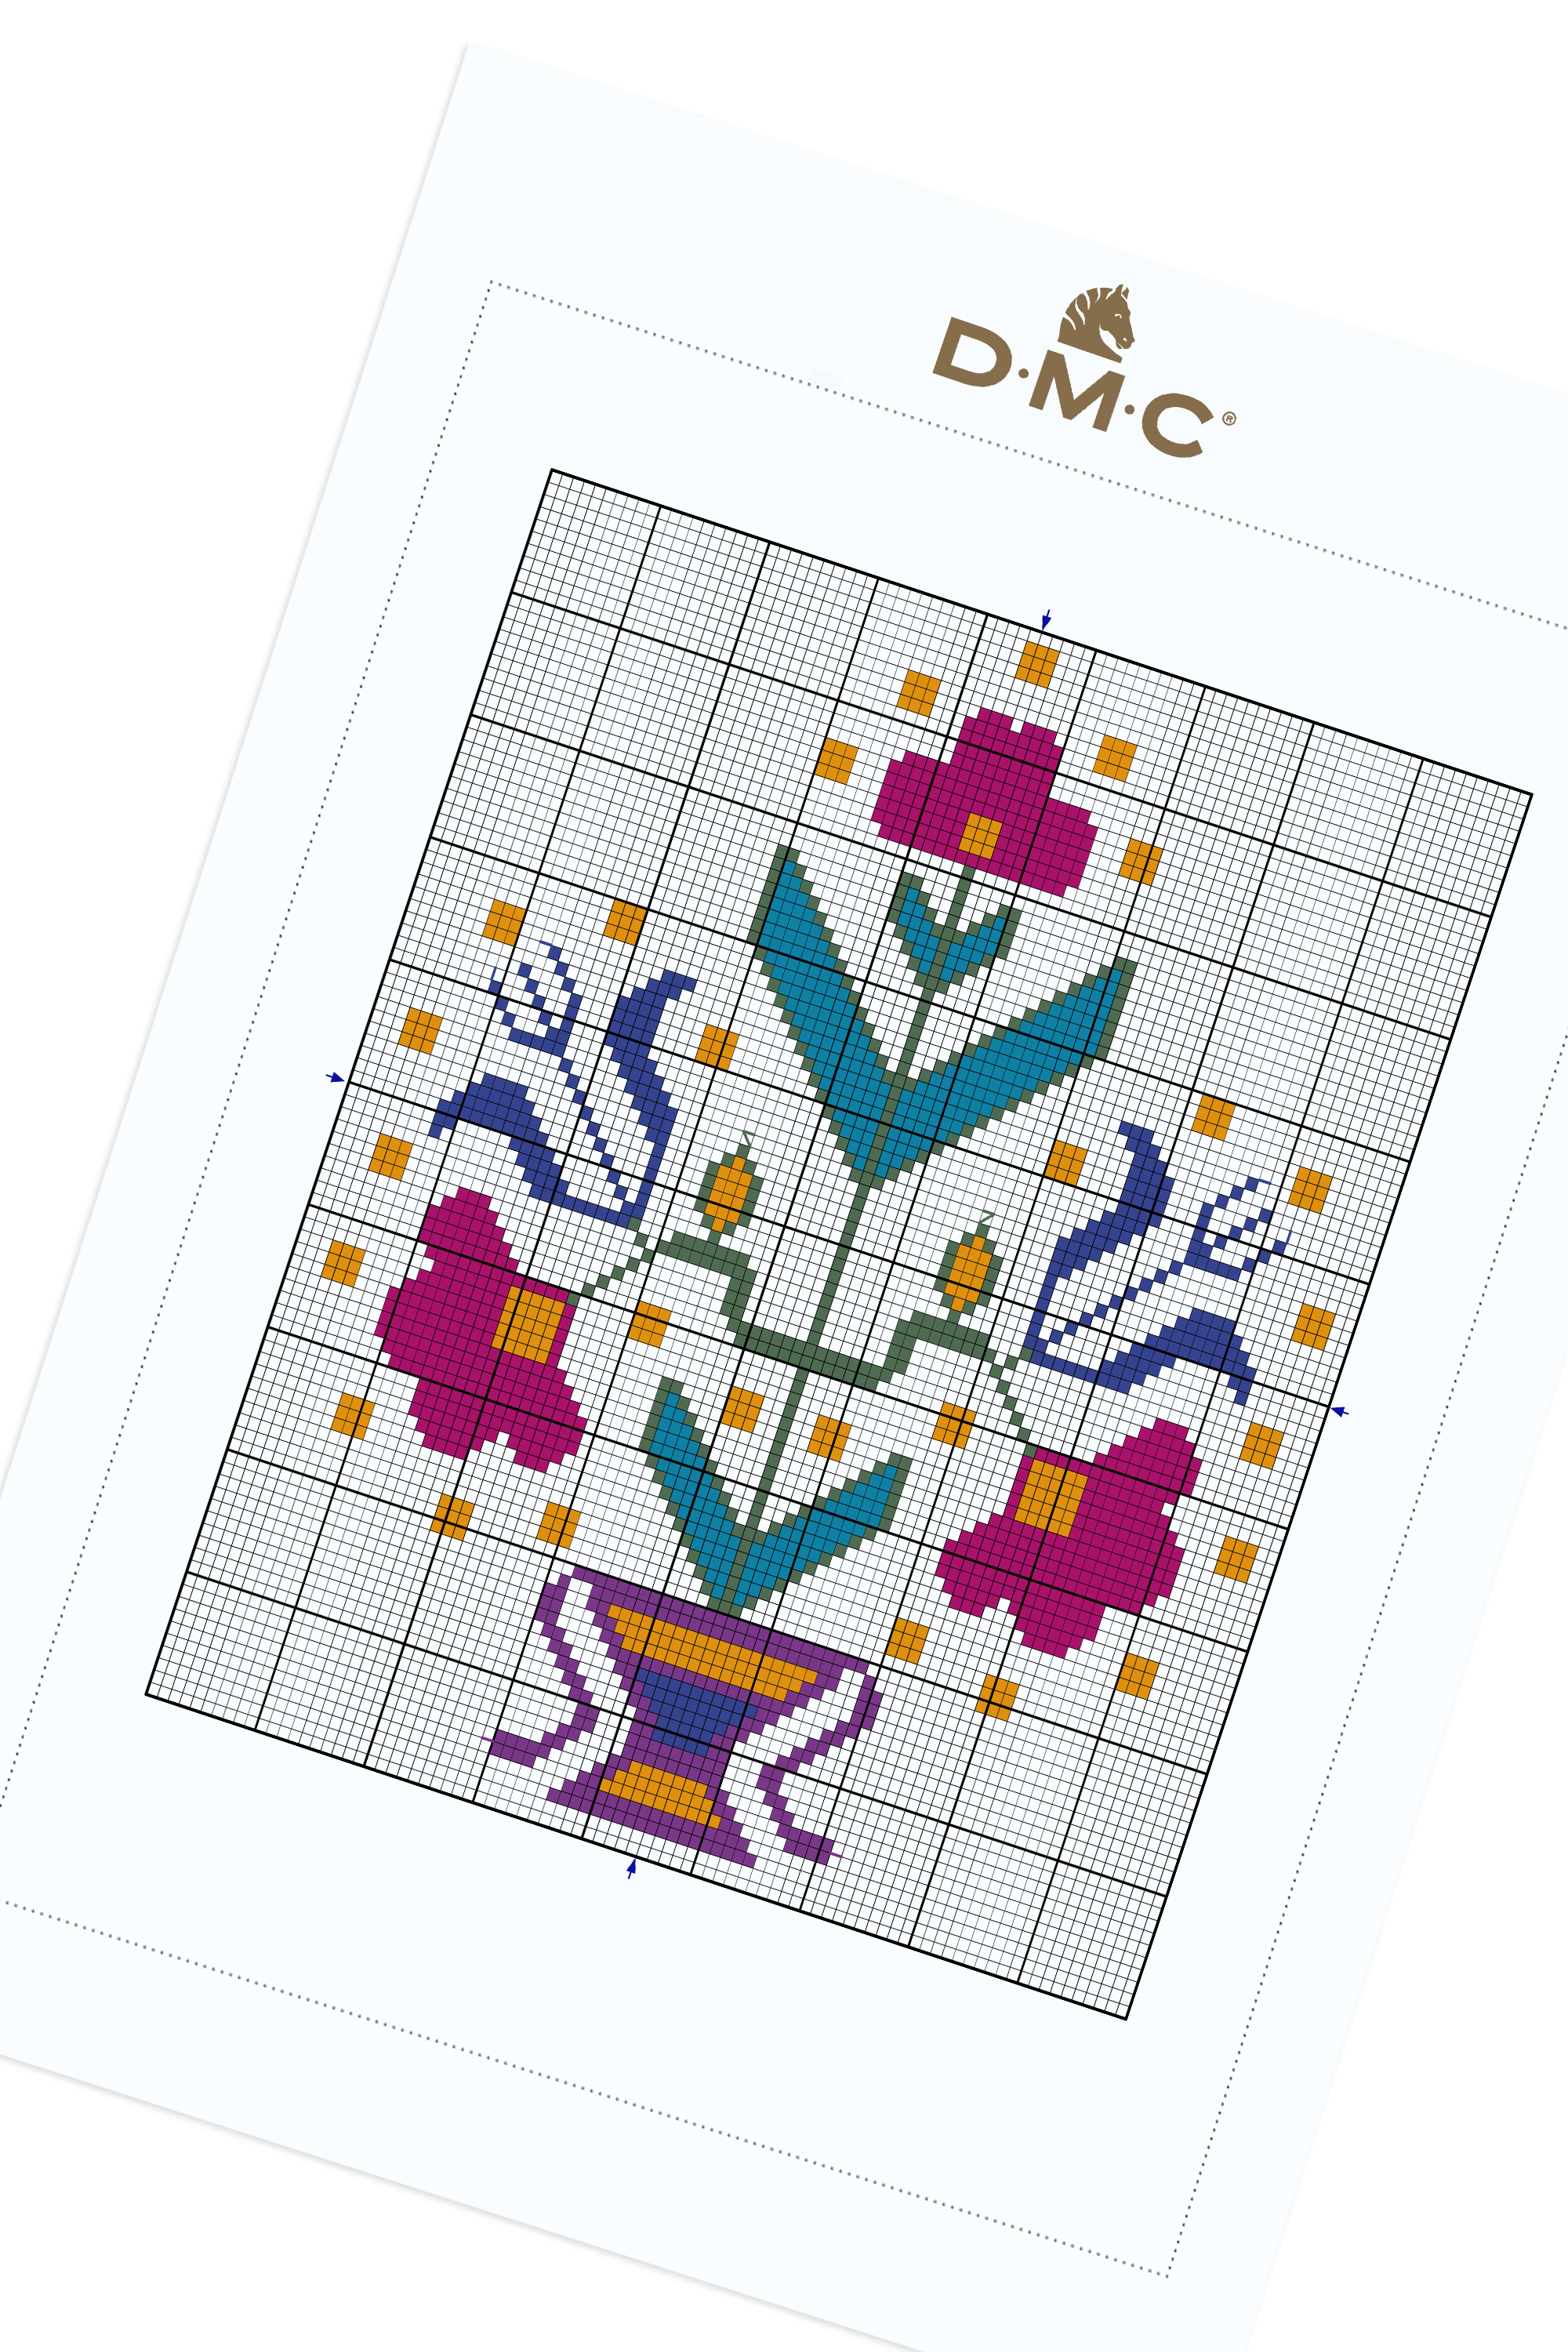 Turkish Embroidery Patterns Symmetrical Turkish Flowers Pattern Free Cross Stitch Patterns Dmc